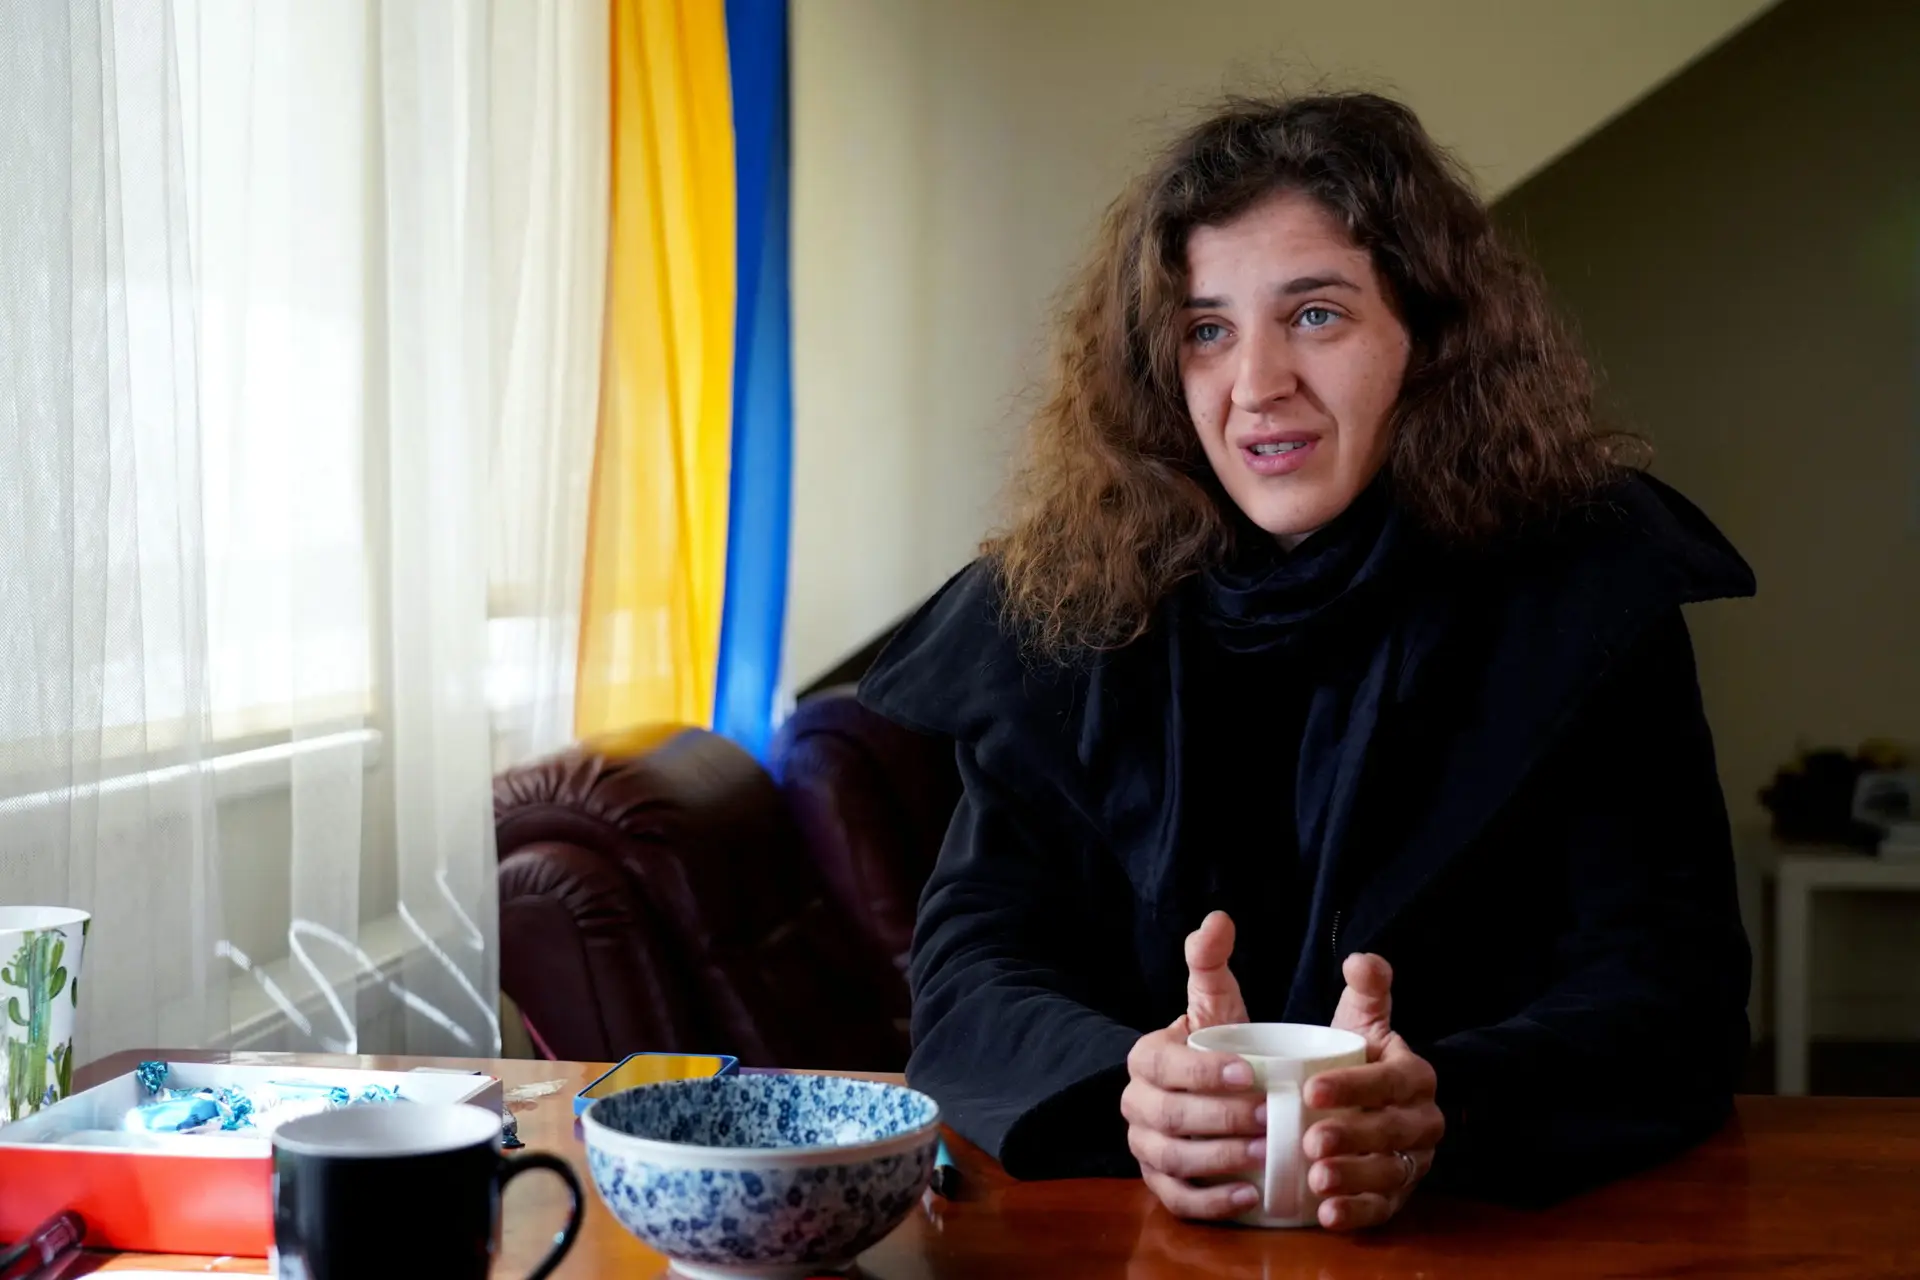 Realizador lituano terá sido assassinado a sangue frio na Ucrânia